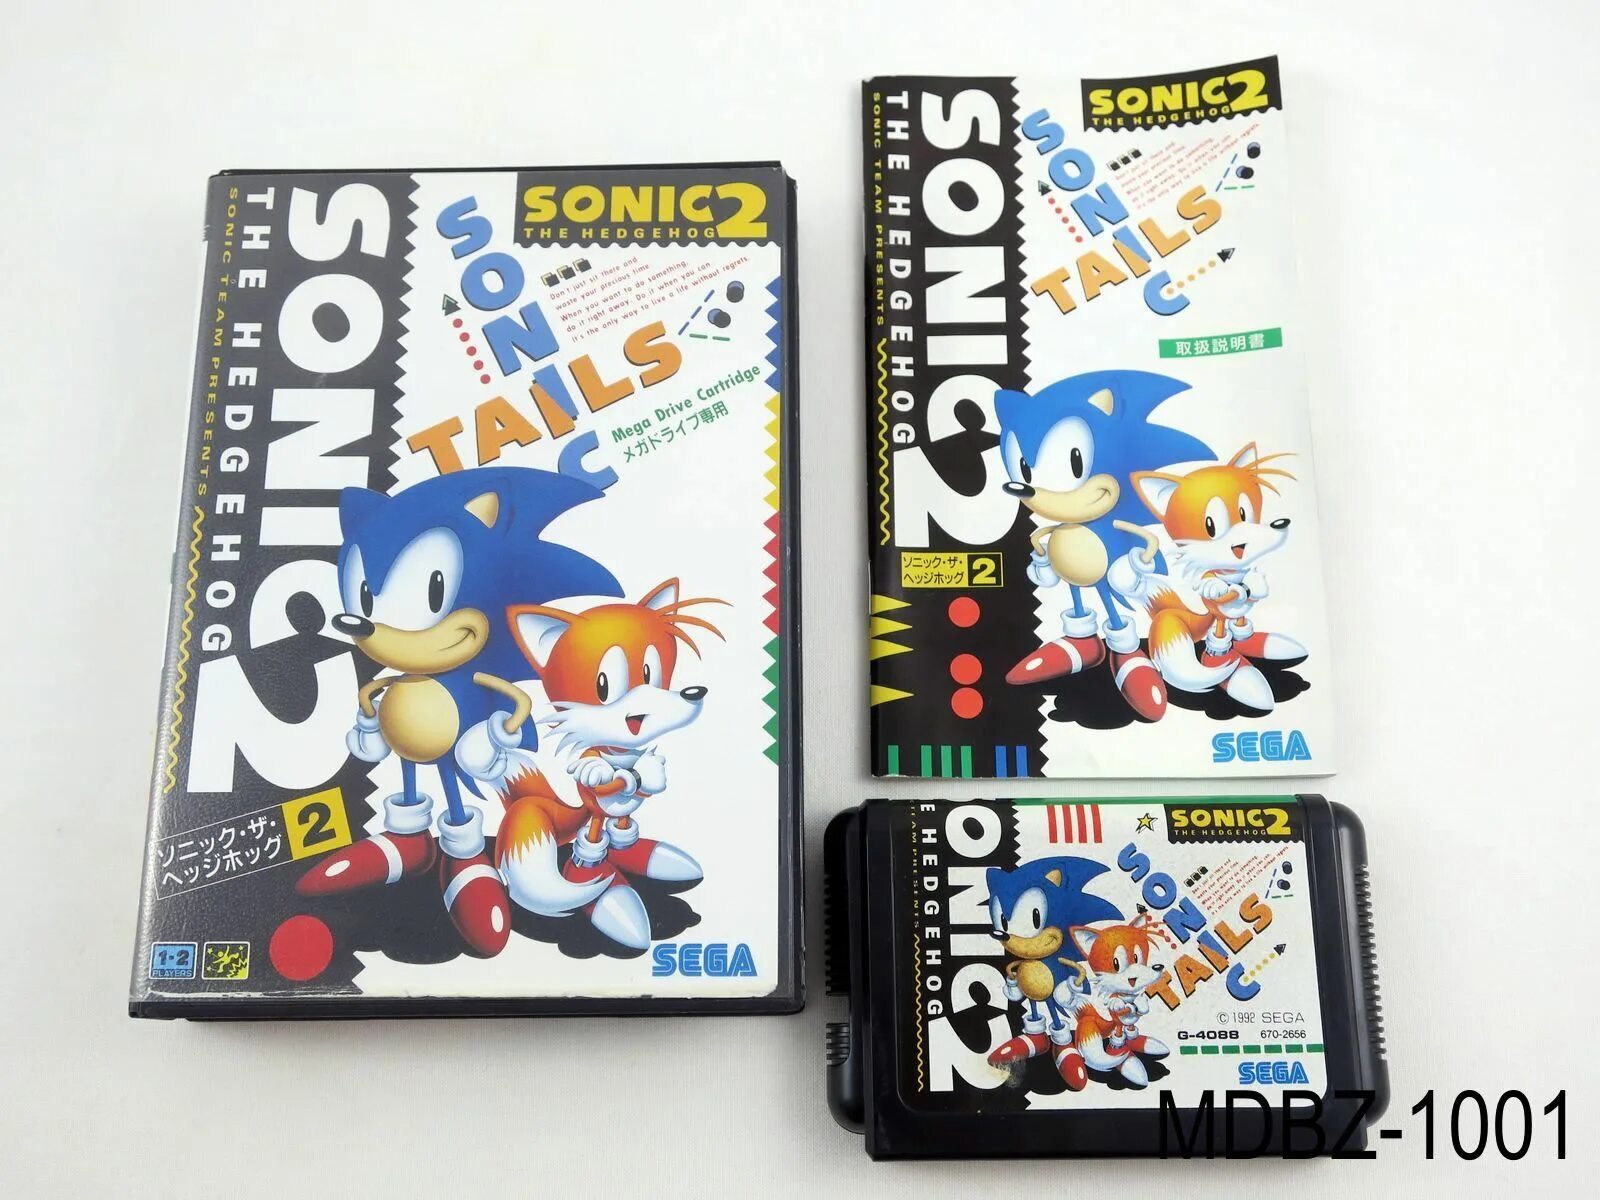 Sonic jp. Sonic 3 Sega Mega Drive. Sega Mega Drive 2 Sonic. Sonic the Hedgehog 2 Sega Mega Drive. Sonic 2 Sega Japan.